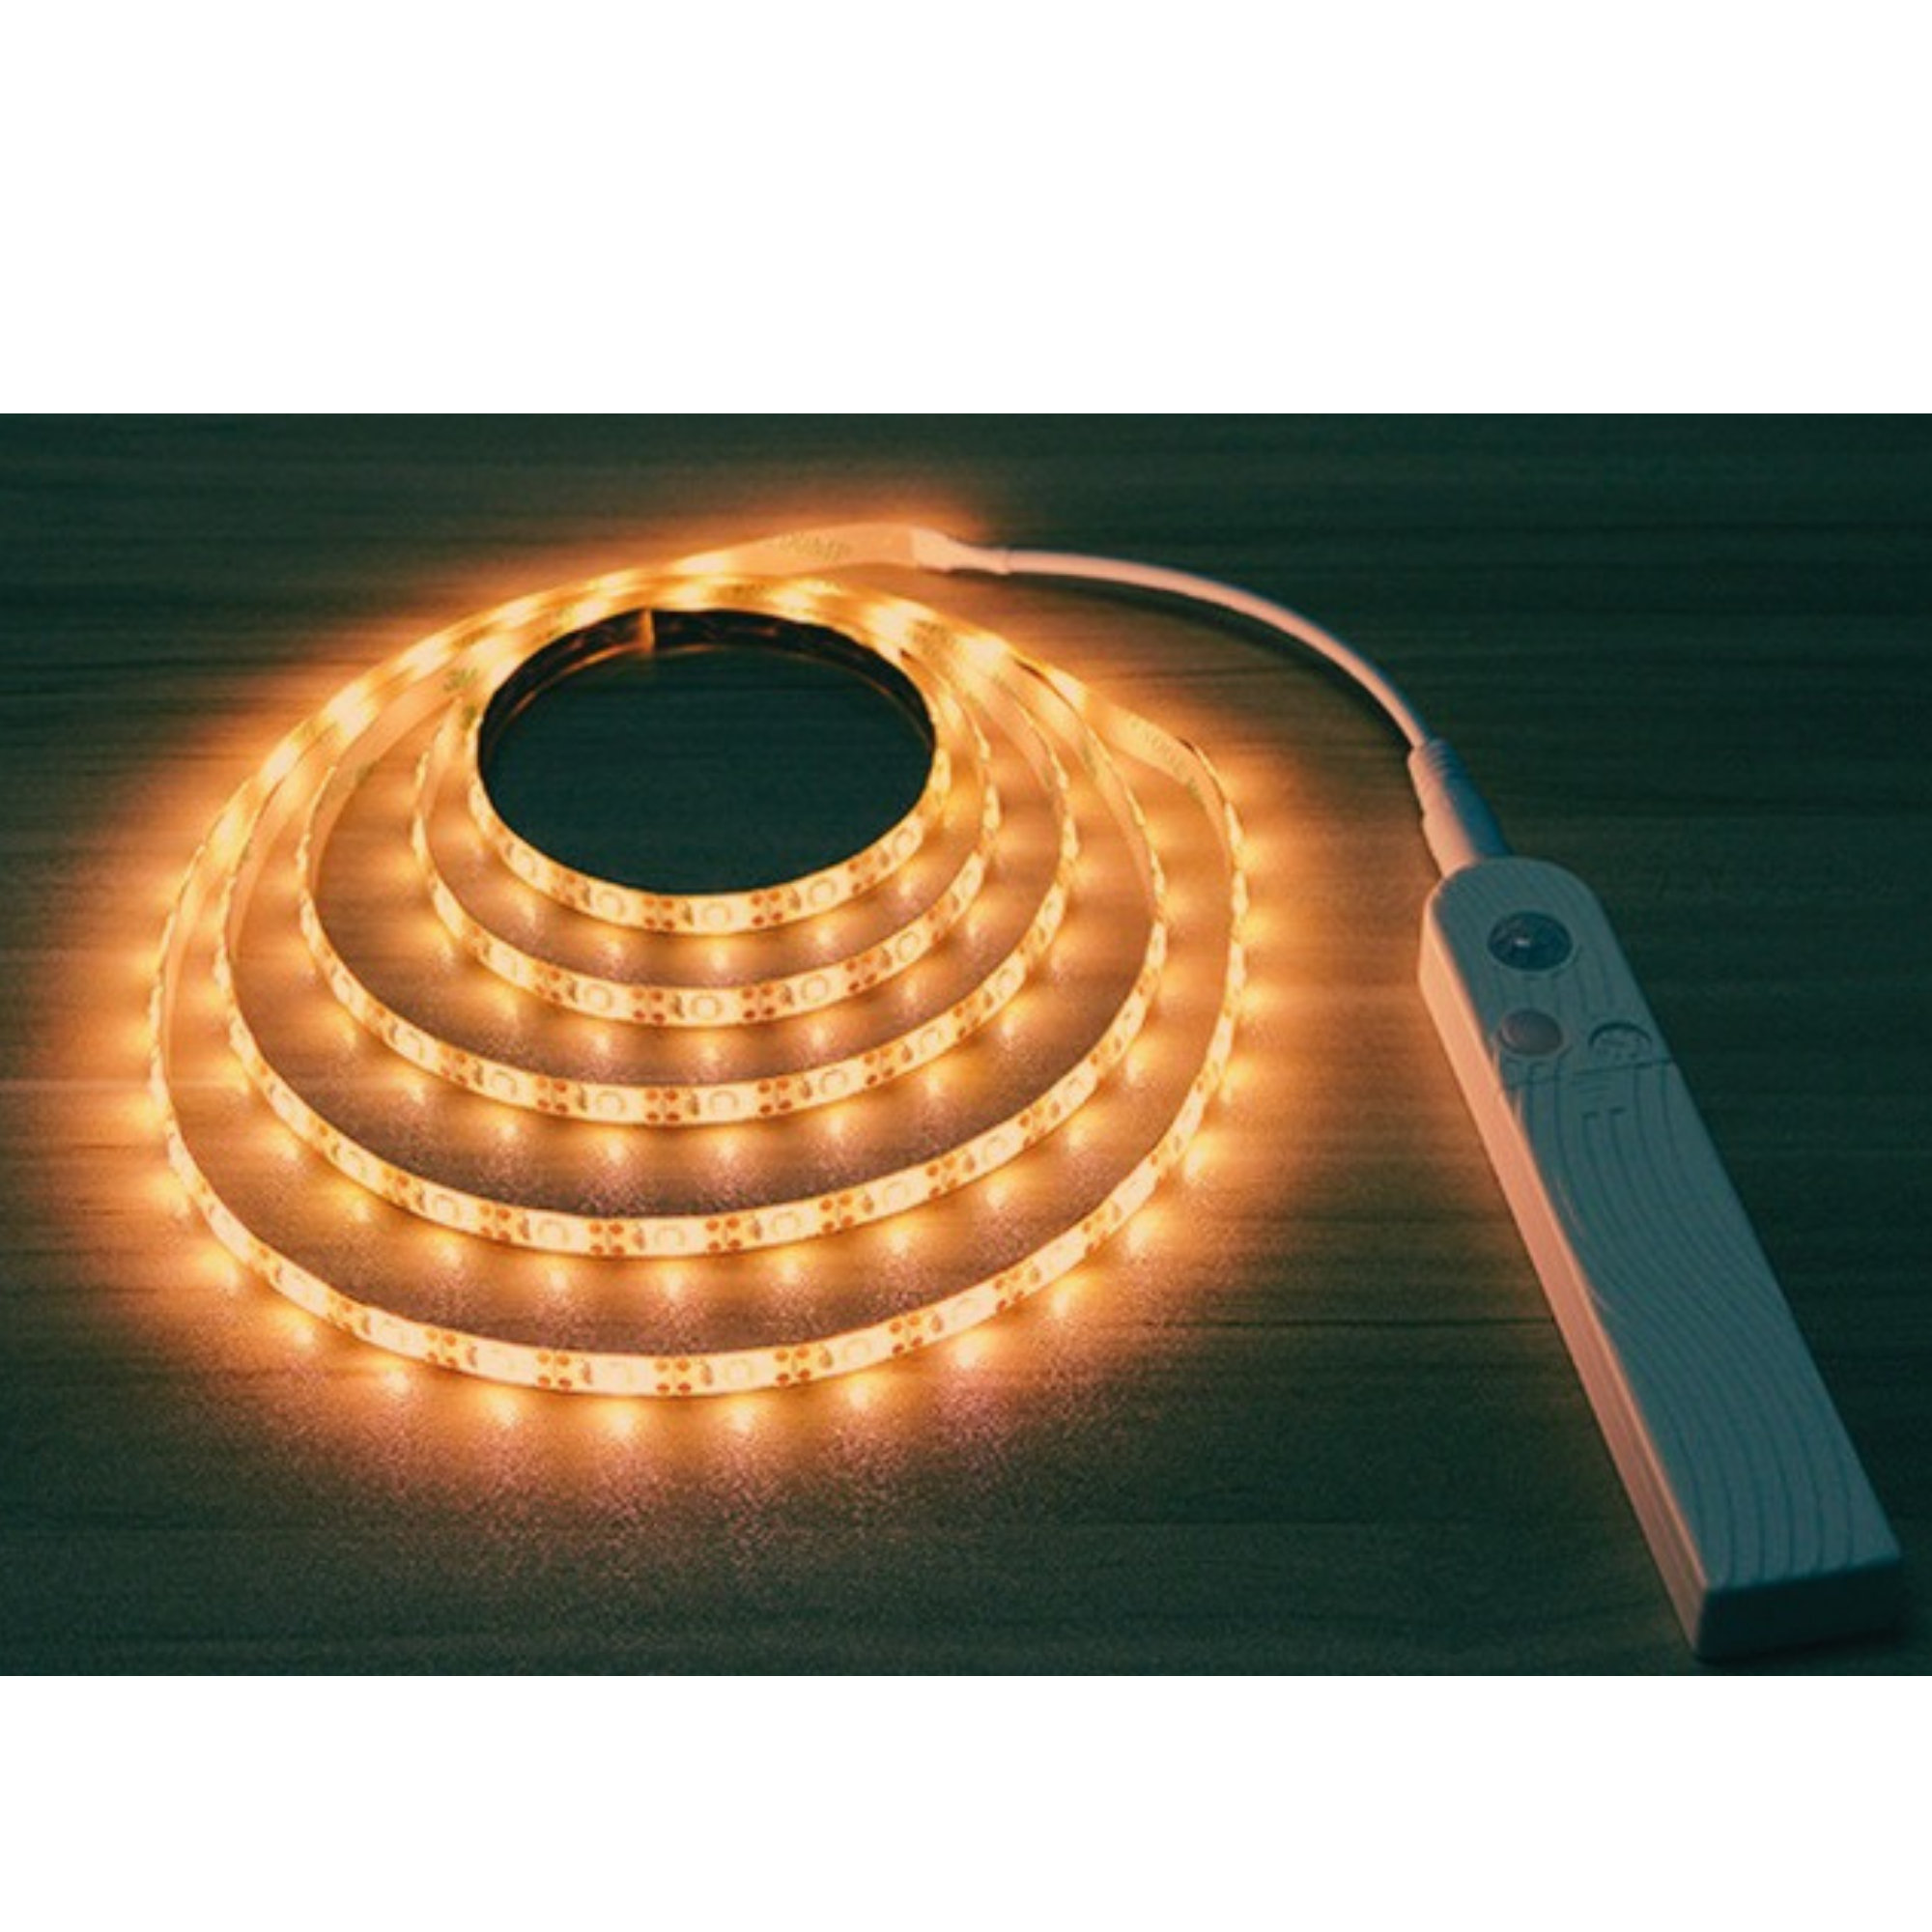 https://assets.wfcdn.com/im/26256723/compr-r85/2152/215239500/sleep-mode-underbed-light-night-light-amber-glow-no-blue-light-battery-powered-peel-and-stick-install.jpg